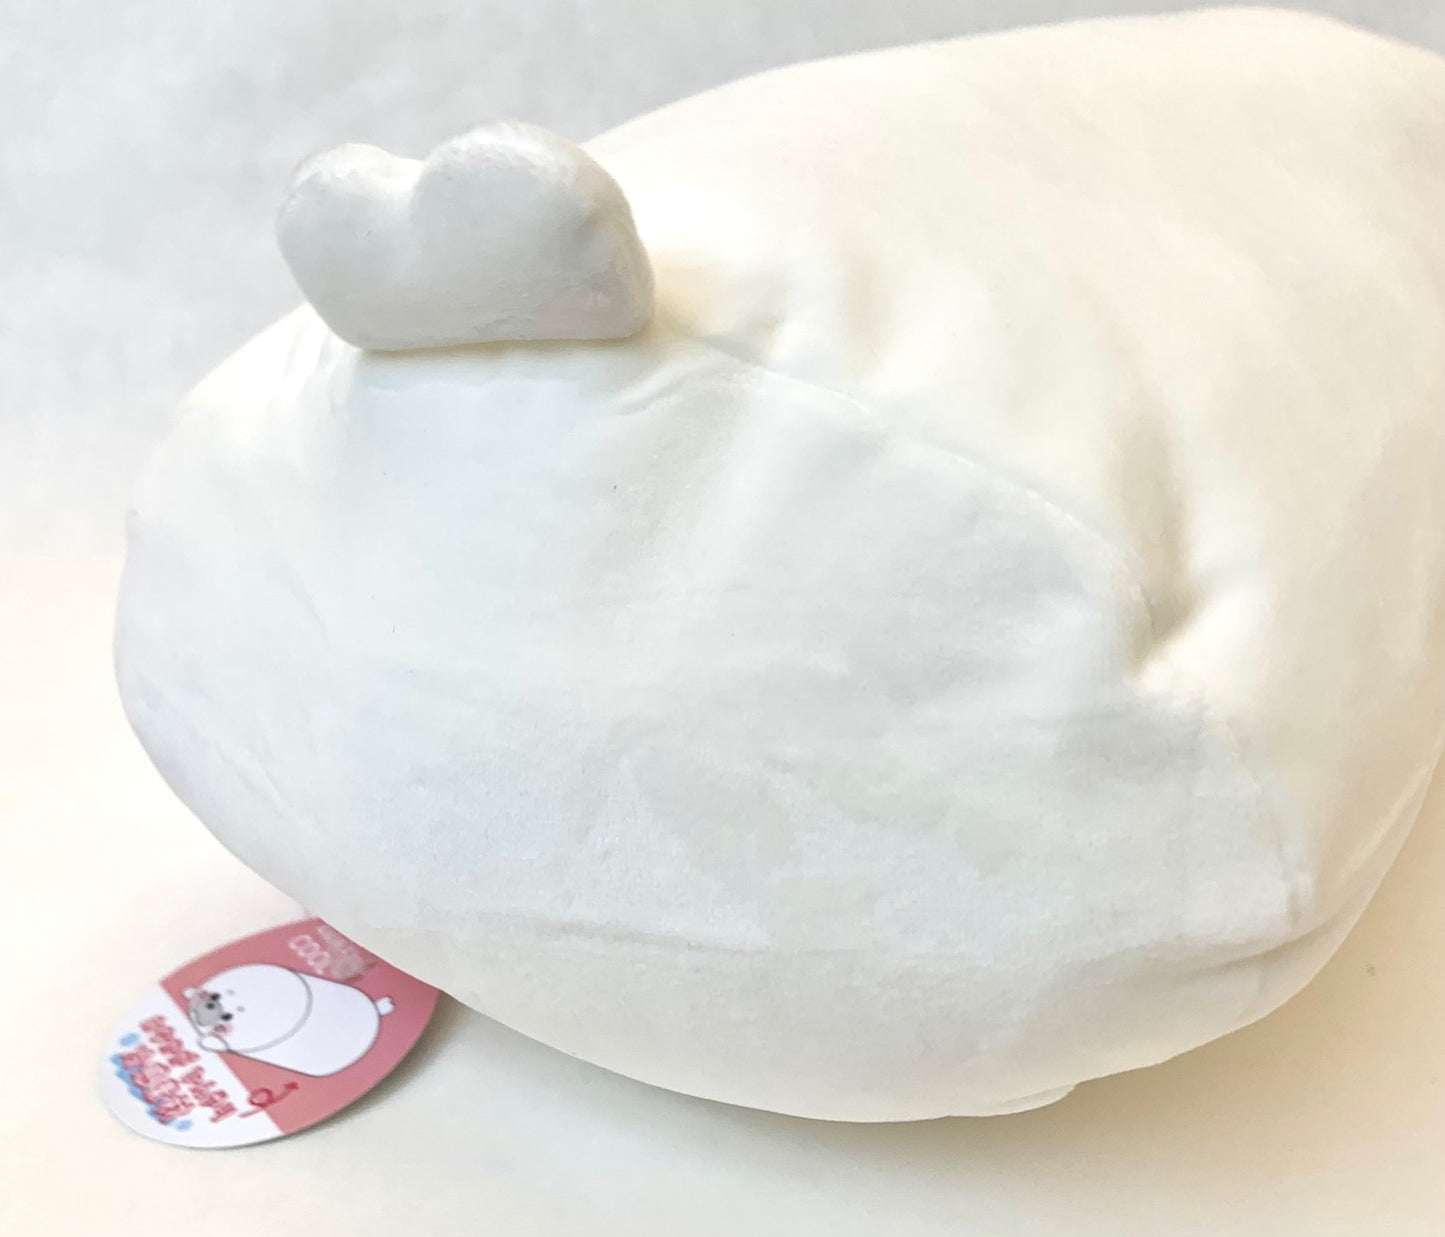 X 63256 CRUX Seal Pillow Plush-DISCONTINUED